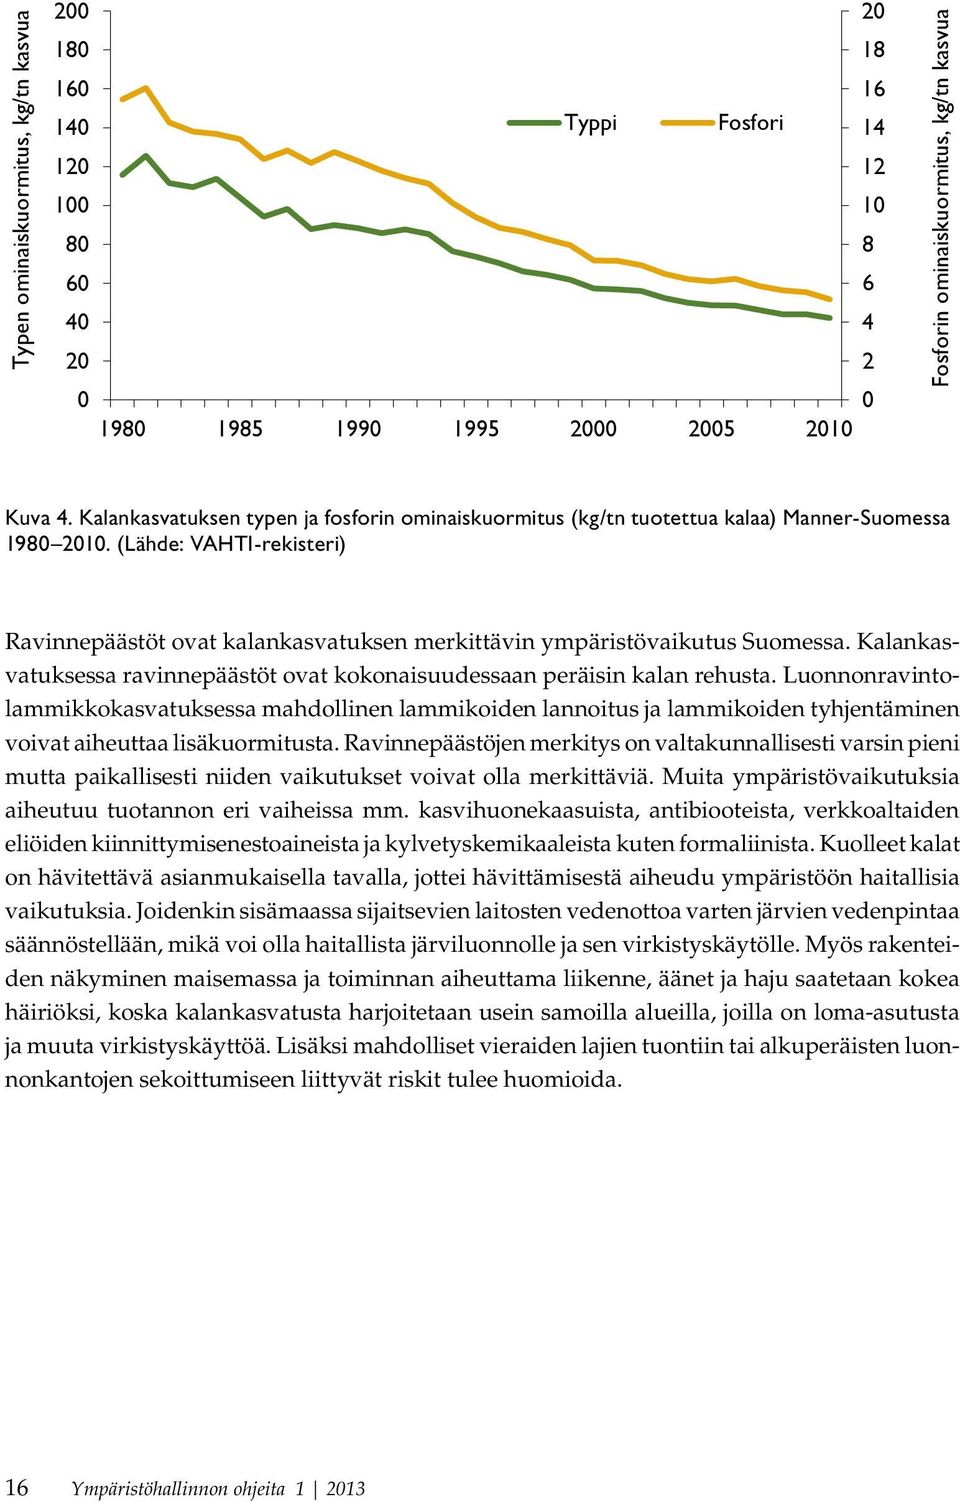 (Lähde: VAHTI-rekisteri) Ravinnepäästöt ovat kalankasvatuksen merkittävin ympäristövaikutus Suomessa. Kalankasvatuksessa ravinnepäästöt ovat kokonaisuudessaan peräisin kalan rehusta.